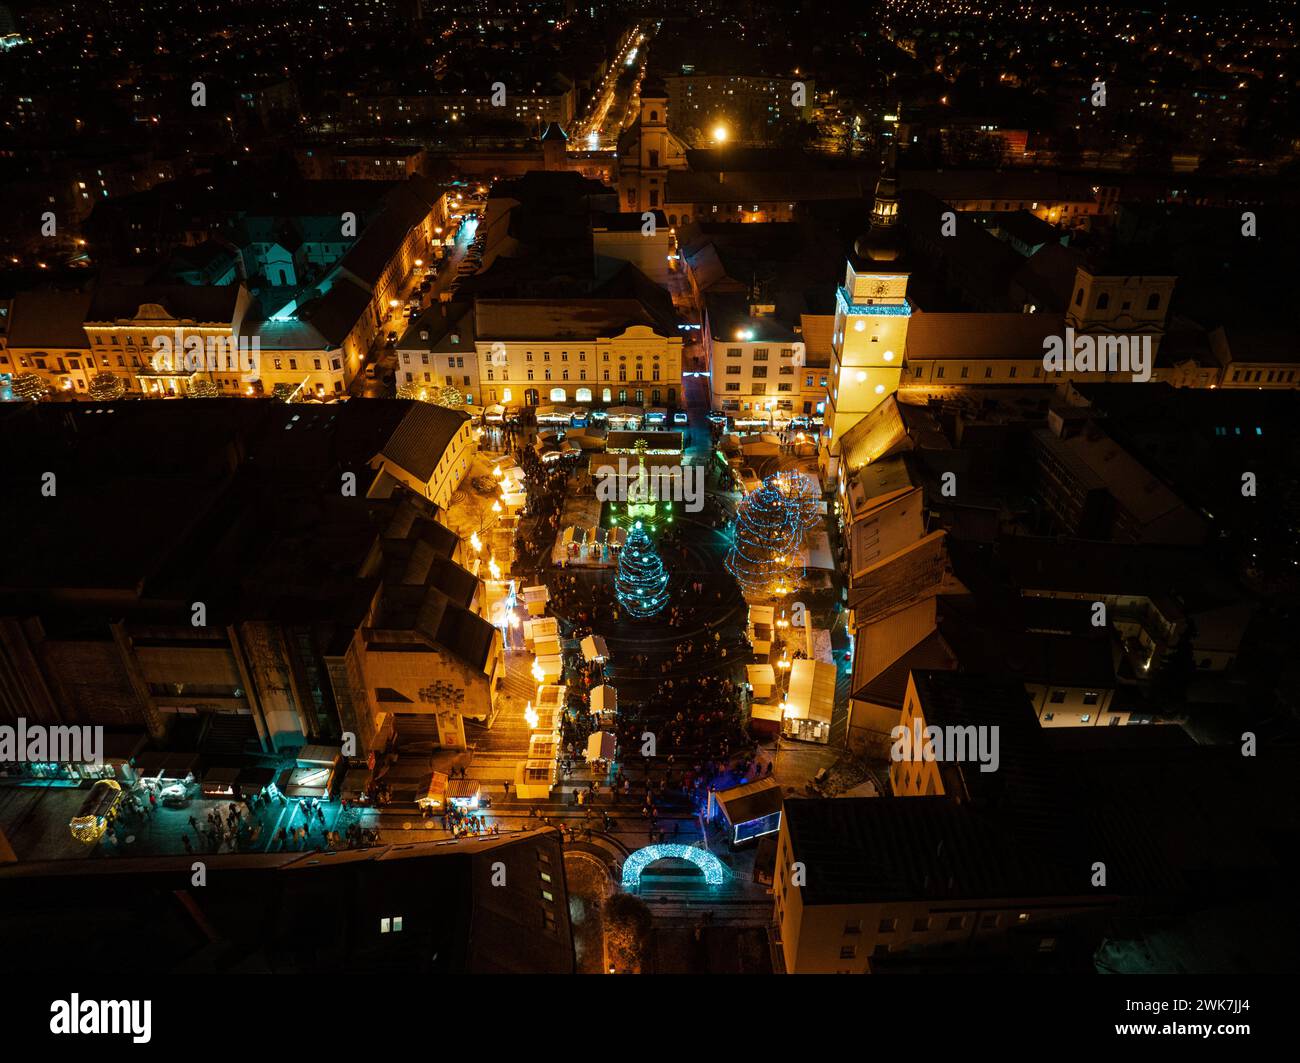 Luftaufnahme der Stadt während Weihnachten, Winter und weihnachtsdekoration auf dem Stadtplatz. Chistmas-Markt während der Weihnachtszeit in einer kleinen Stadt. Stockfoto